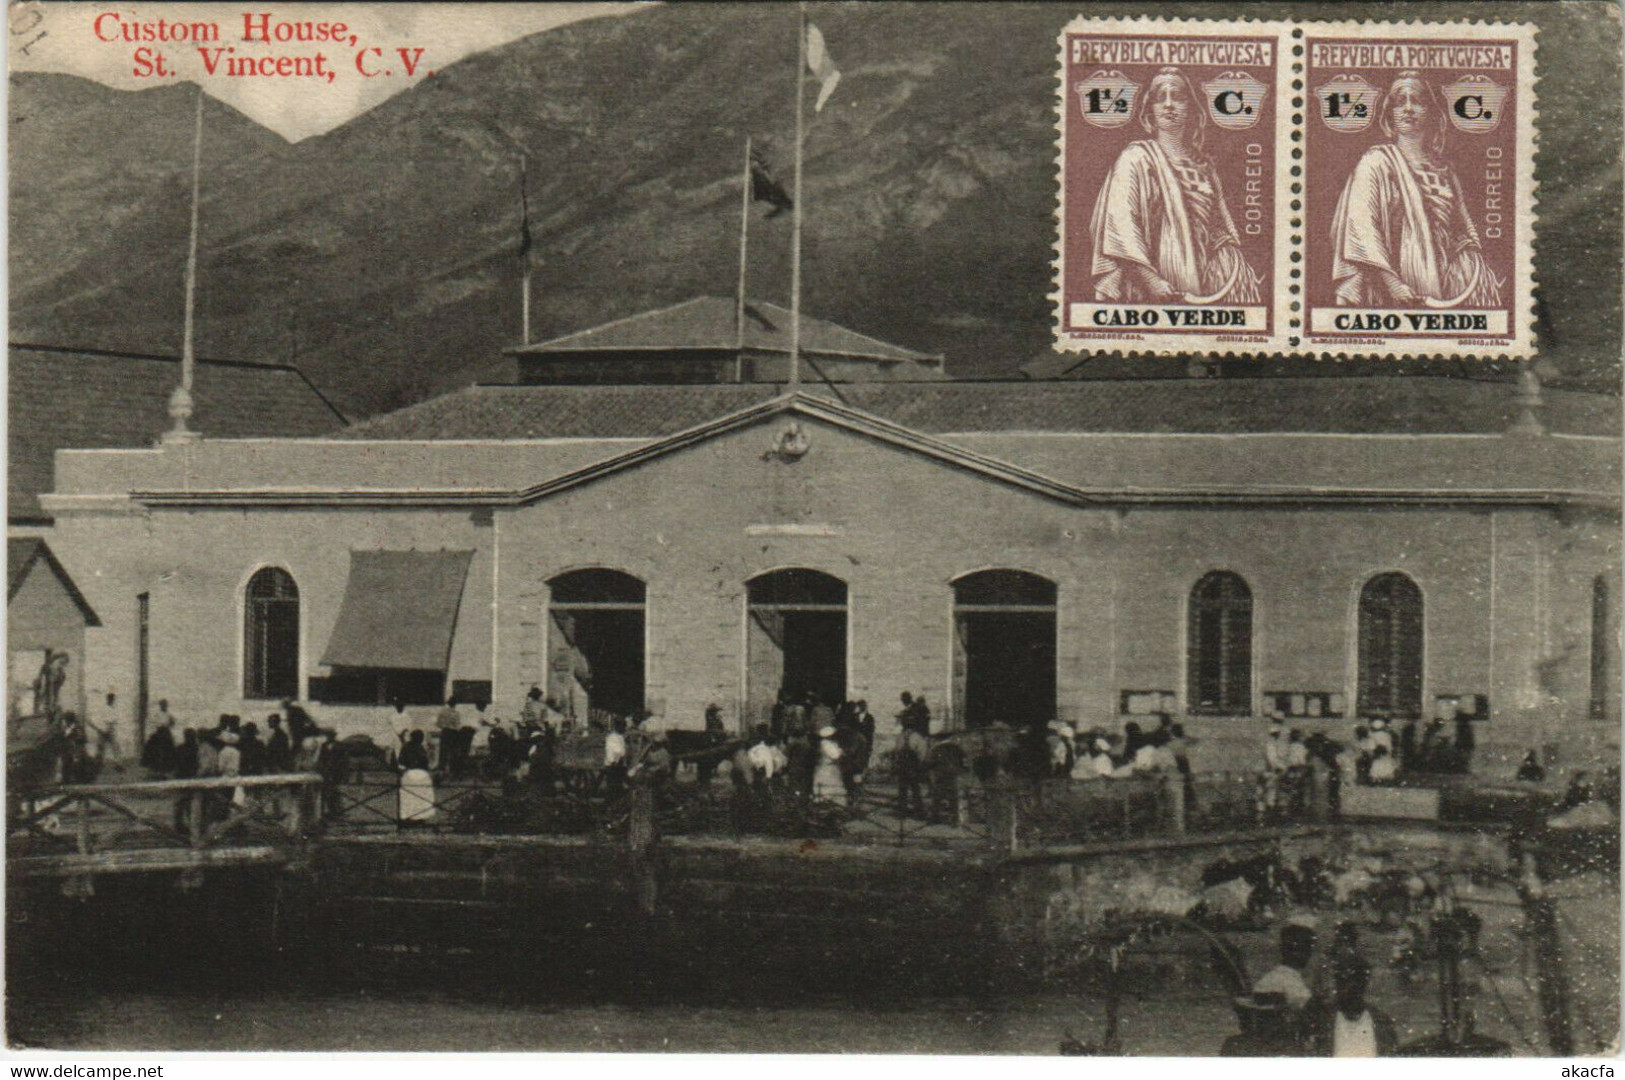 PC CABO VERDE / CAPE VERDE, ST. VINCENT, CUSTOM HOUSE, Vintage Postcard (b29093) - Kaapverdische Eilanden